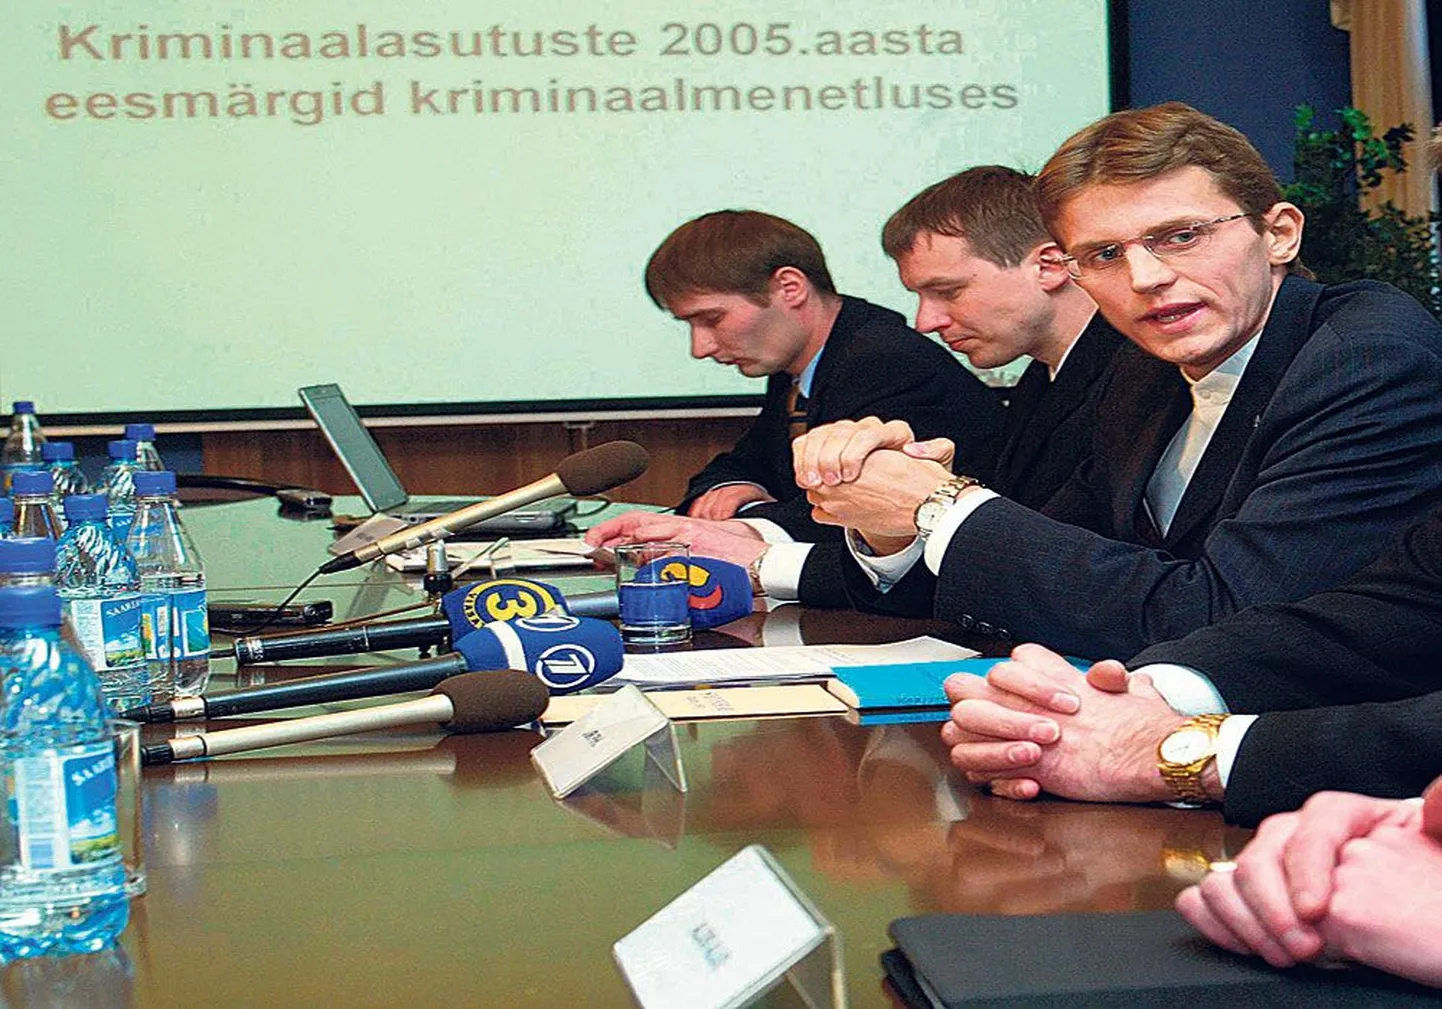 Маргус Курм (слева направо), генеральный прокурор Норман Аас и Кен-Марти Вахер, занимавший на тот момент пост министра юстиции, на одной из пресс-конферен­ций в 2005 году.